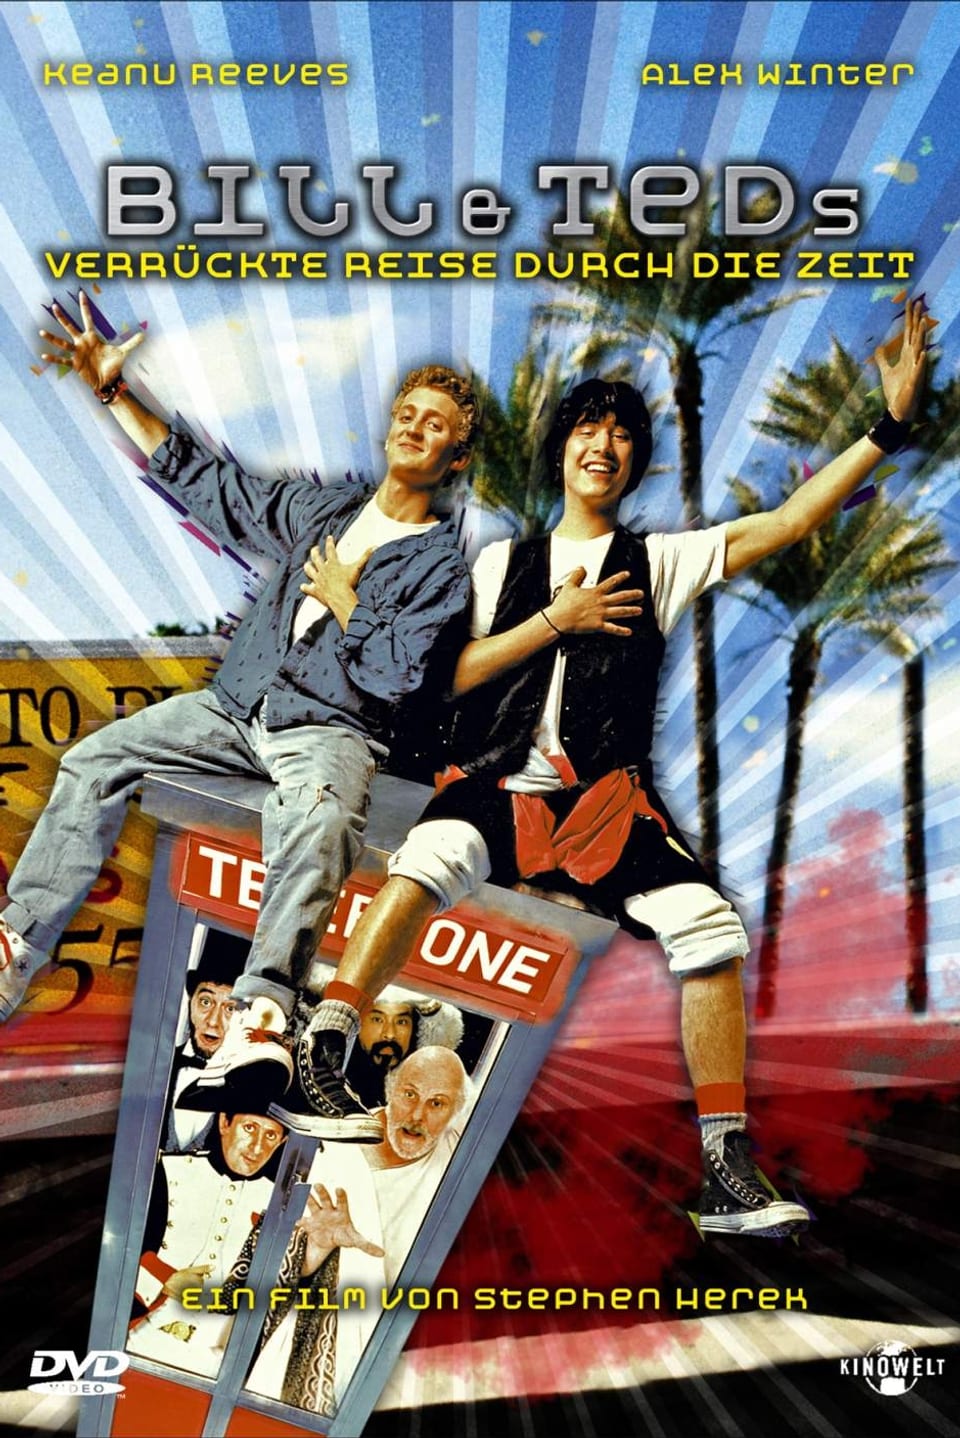 DVD-Cover von «Bill & Teds verrückte Reise durch die Zeit».